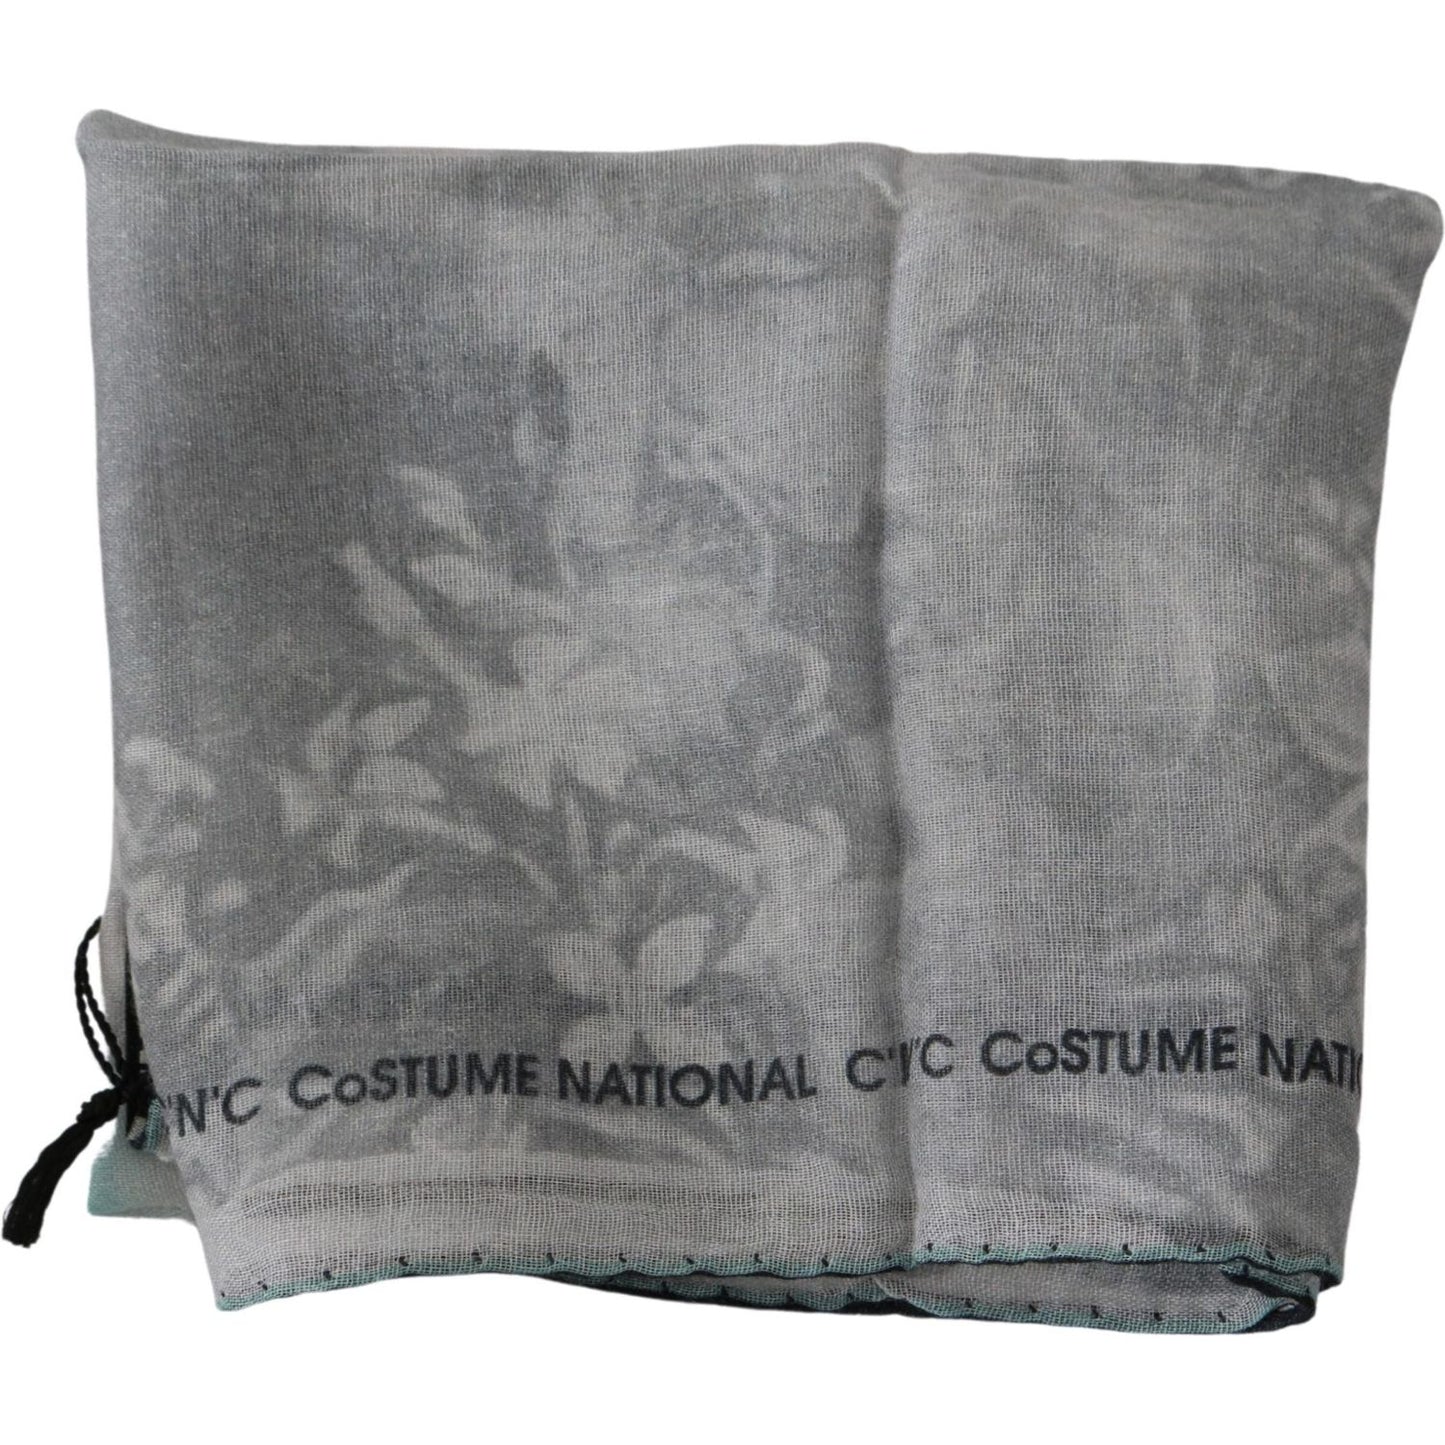 Costume National Elegant Gray Silk Scarf for Women gray-silk-shawl-foulard-wrap-scarf Silk Wrap Shawls IMG_0257-1-scaled-ced81982-a08.jpg